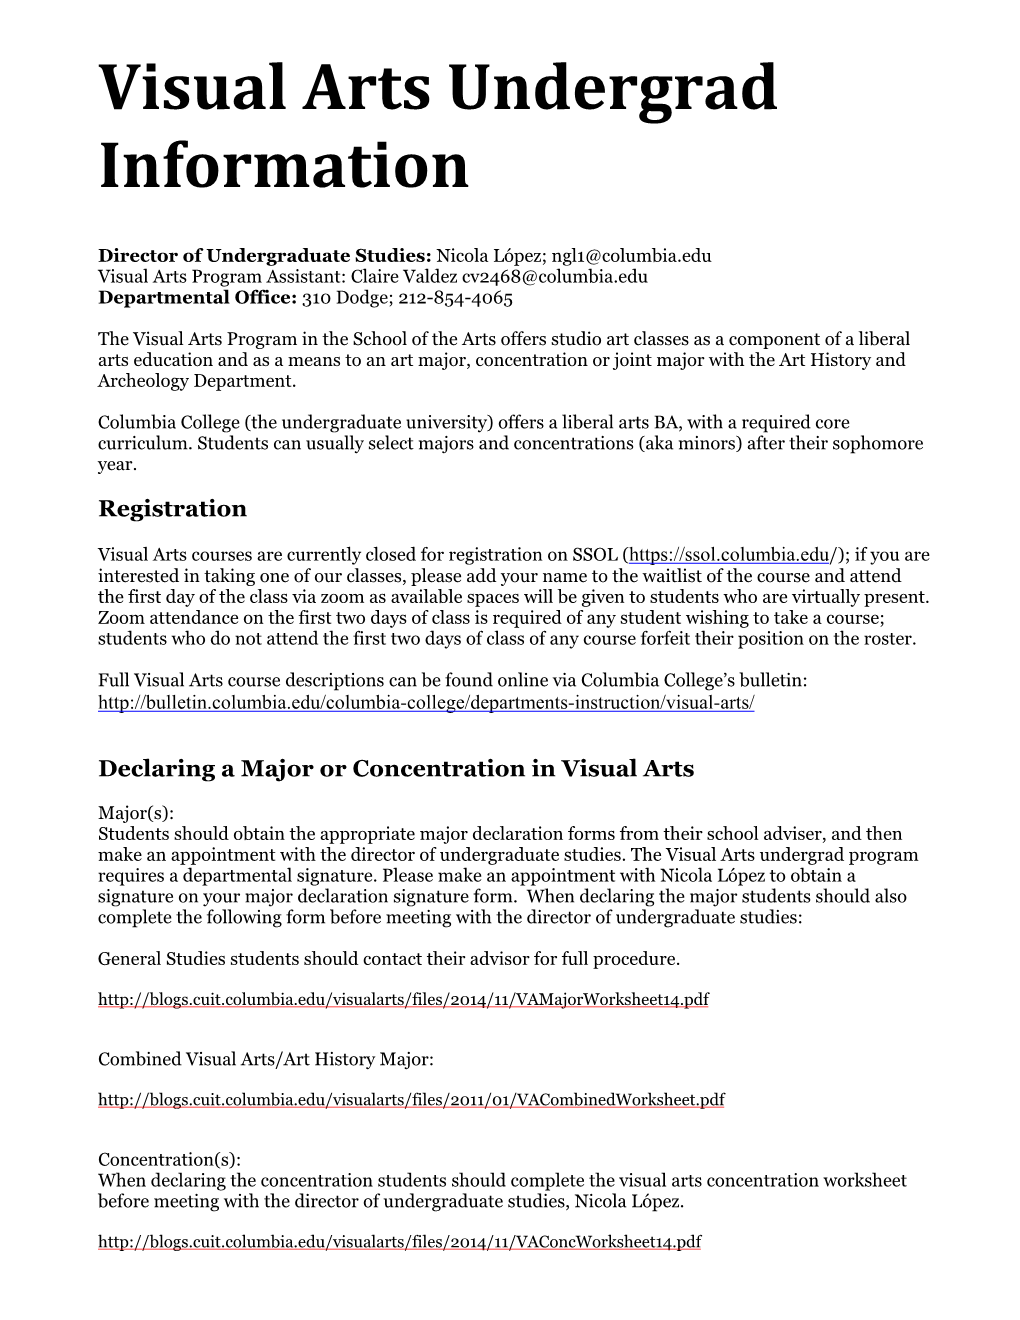 Visual Arts Undergrad Information